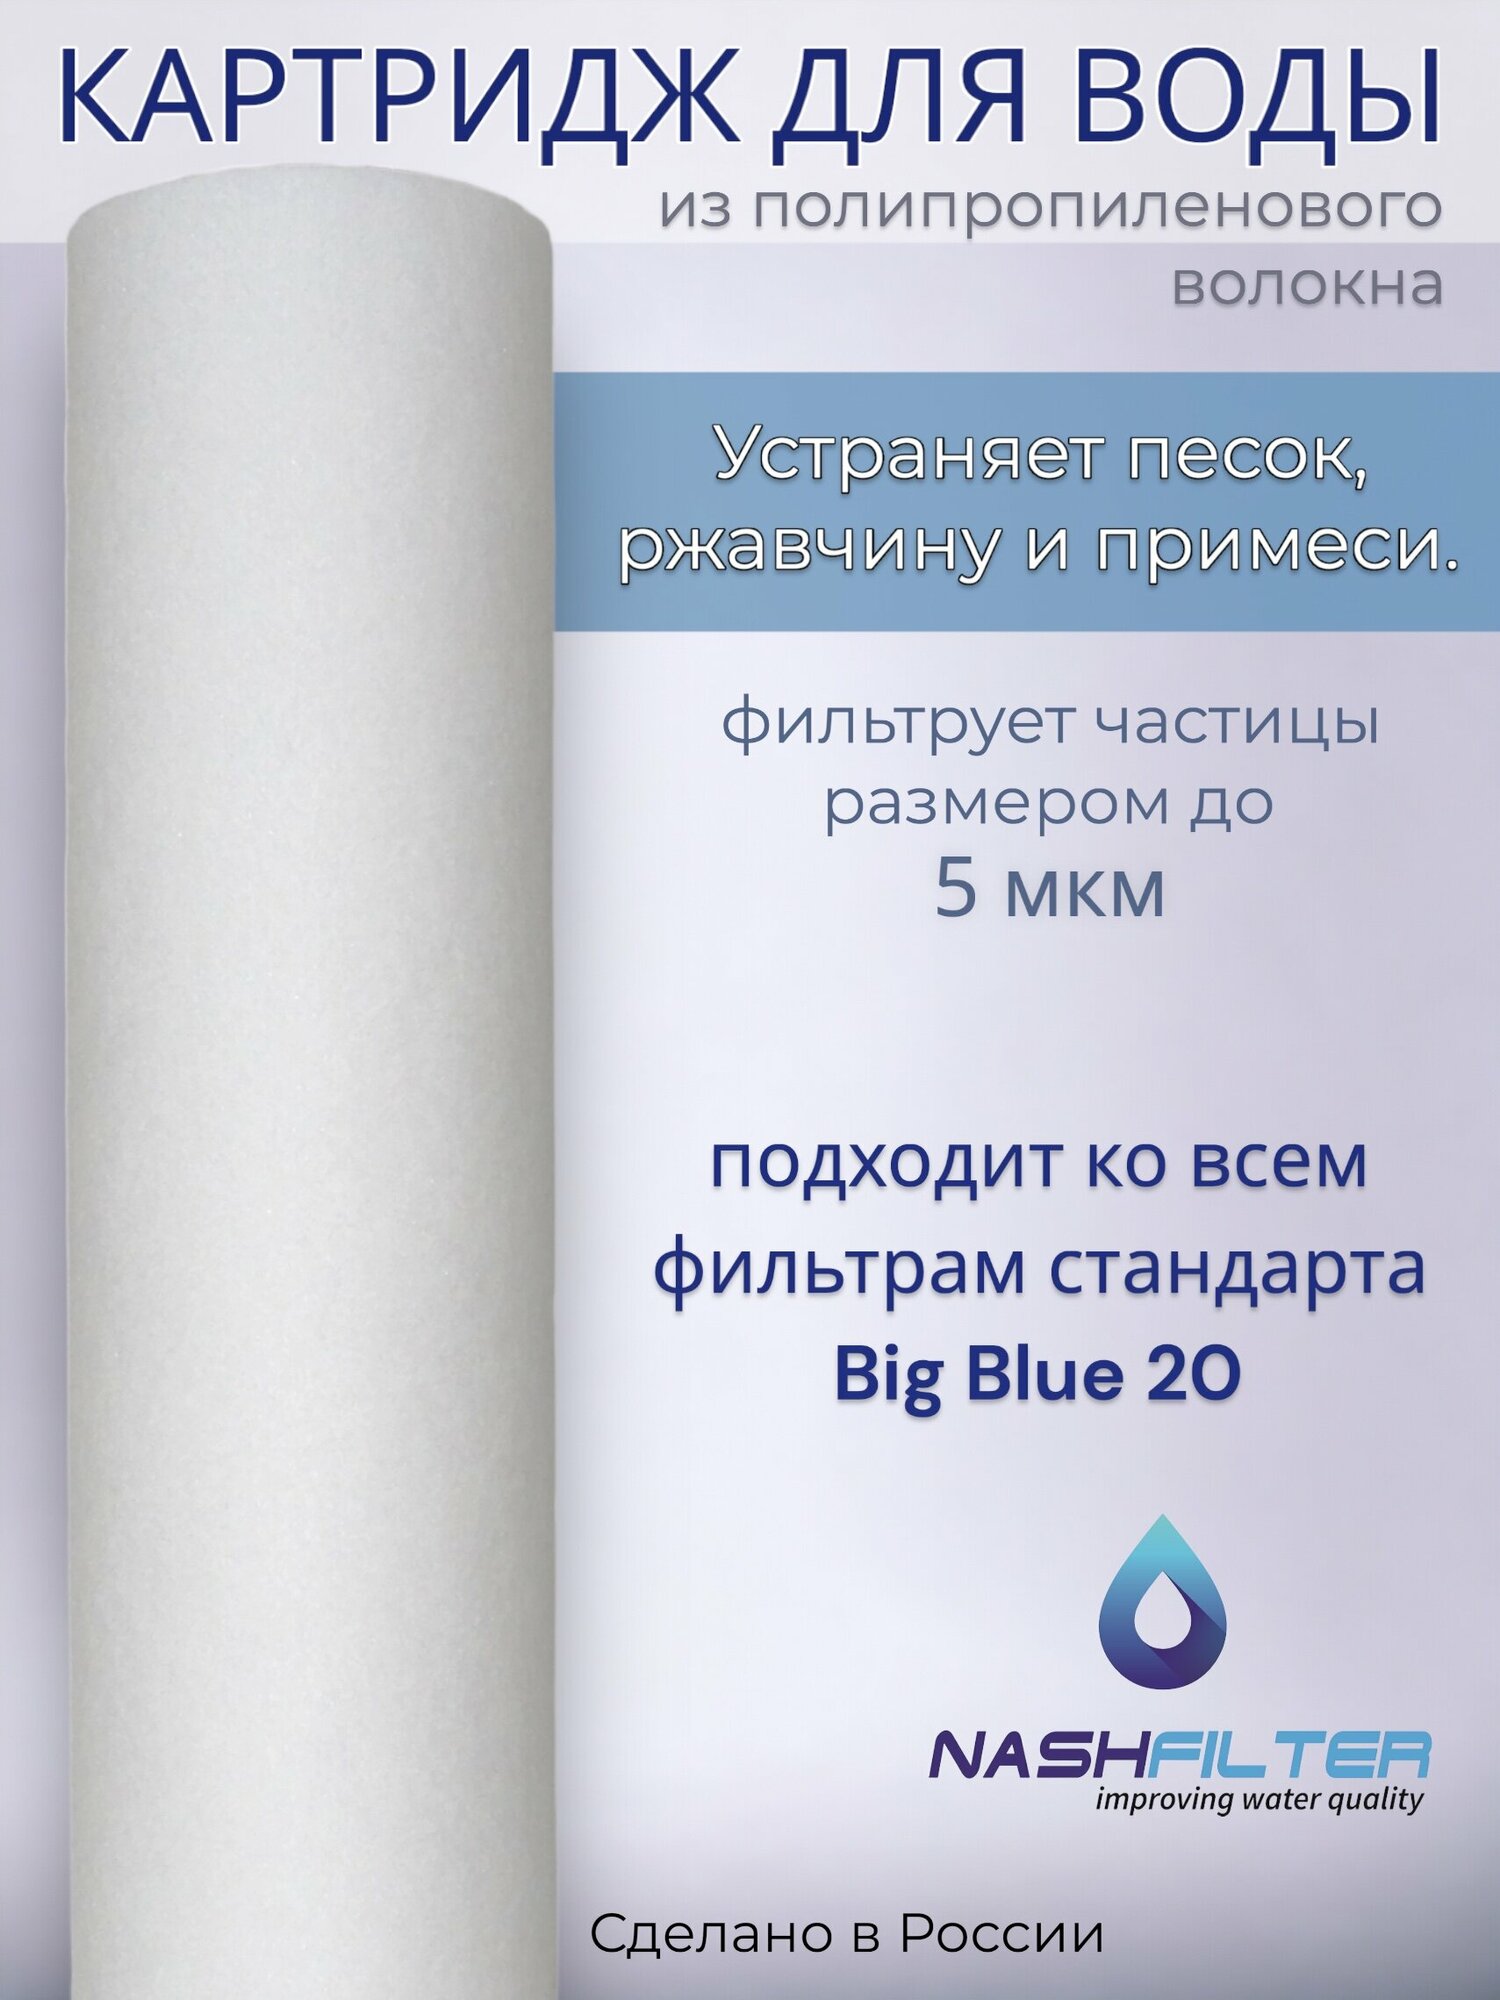 Картридж NASHFILTER из вспененного полипропилена РP 20 Big Blue, 5 мкм